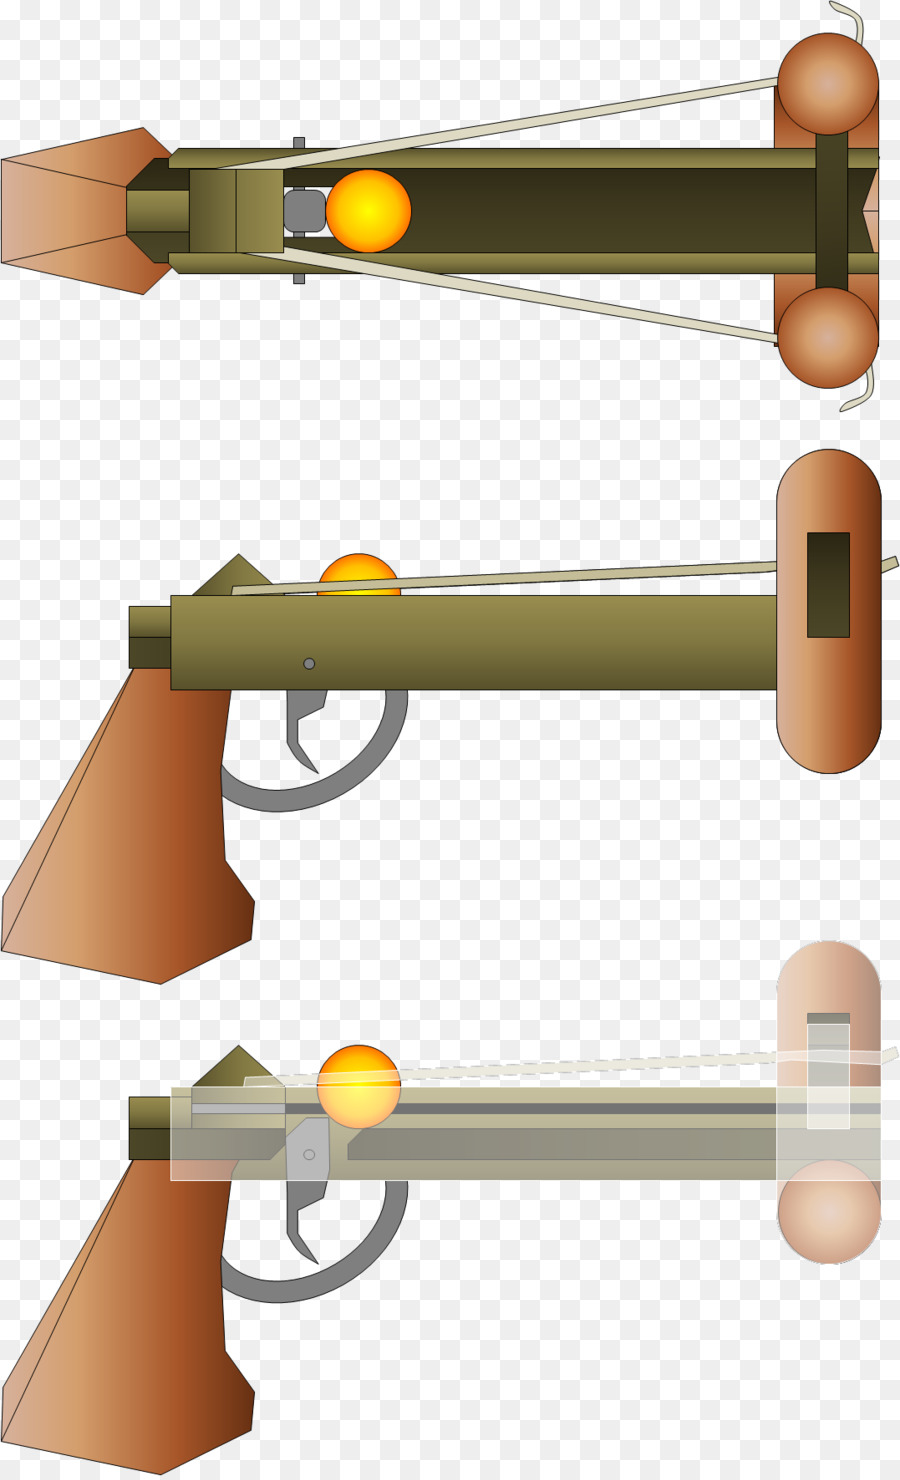 Vũ khí tầm xa Thiết kế sản phẩm - nhà sản xuất súng png brazil